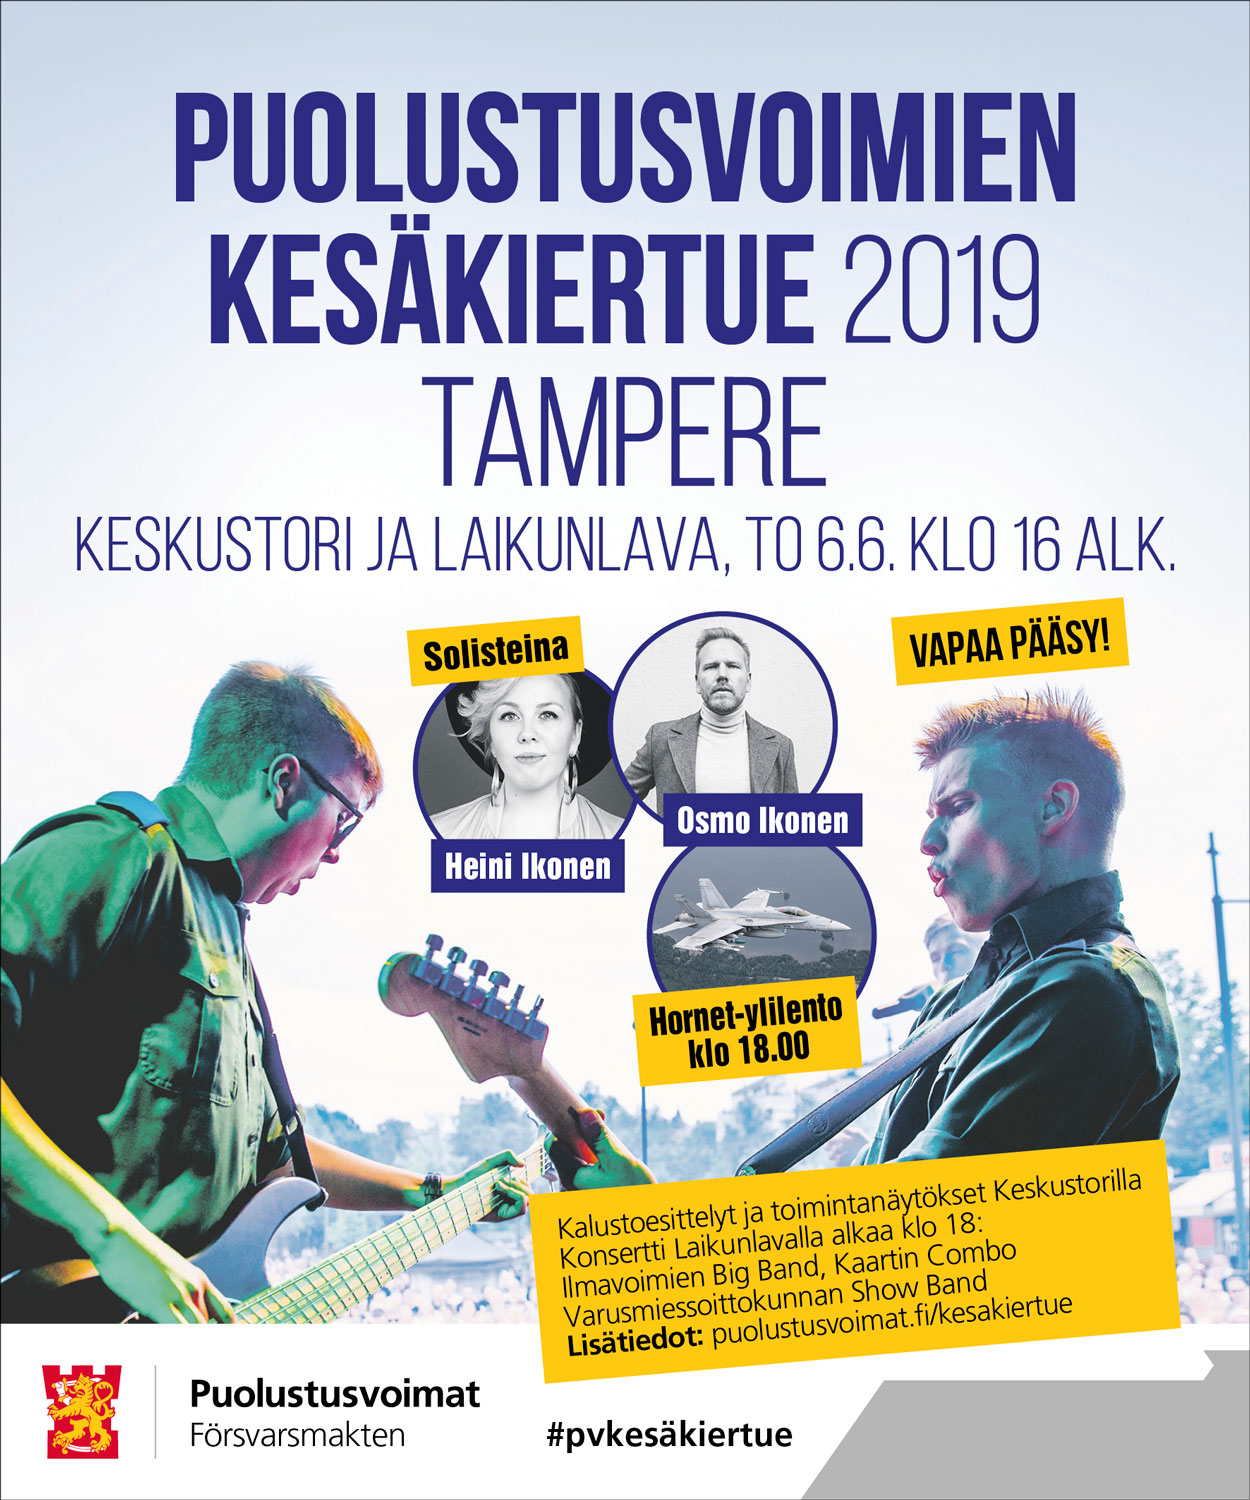 Kesäkiertue Tampere 2019